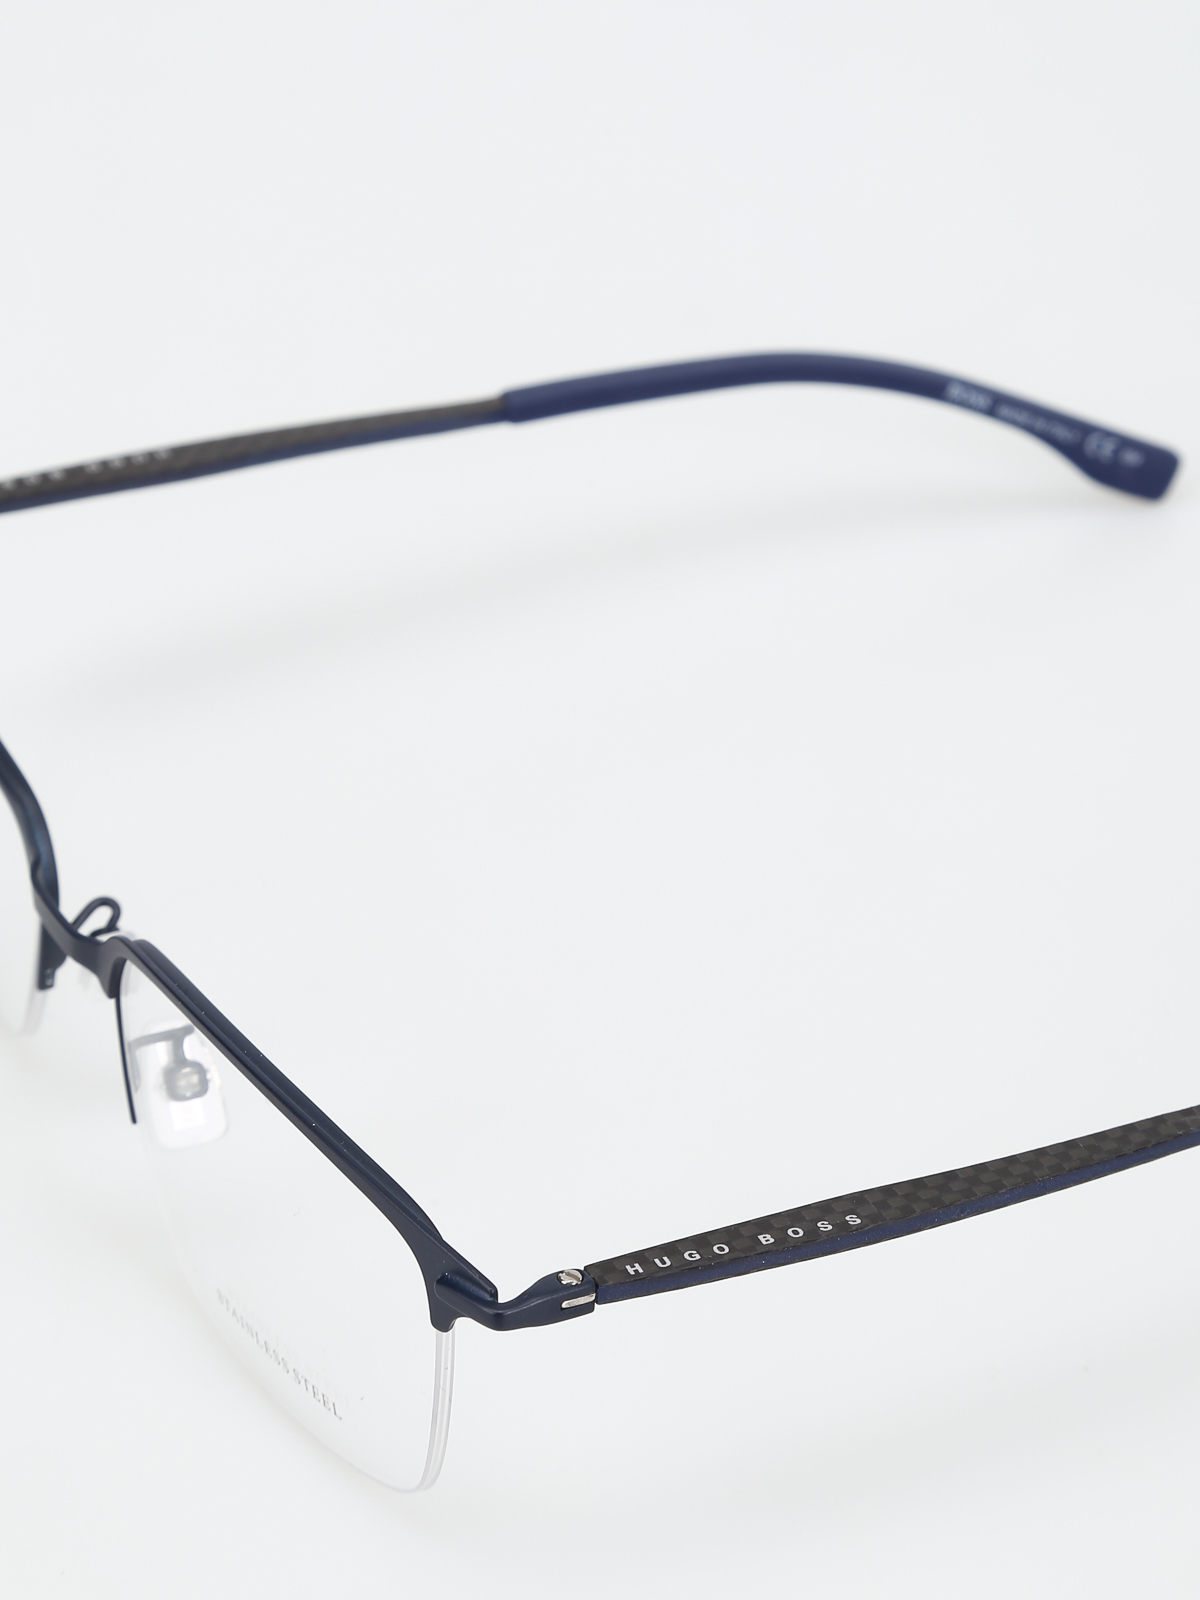 hugo boss glasses frames blue